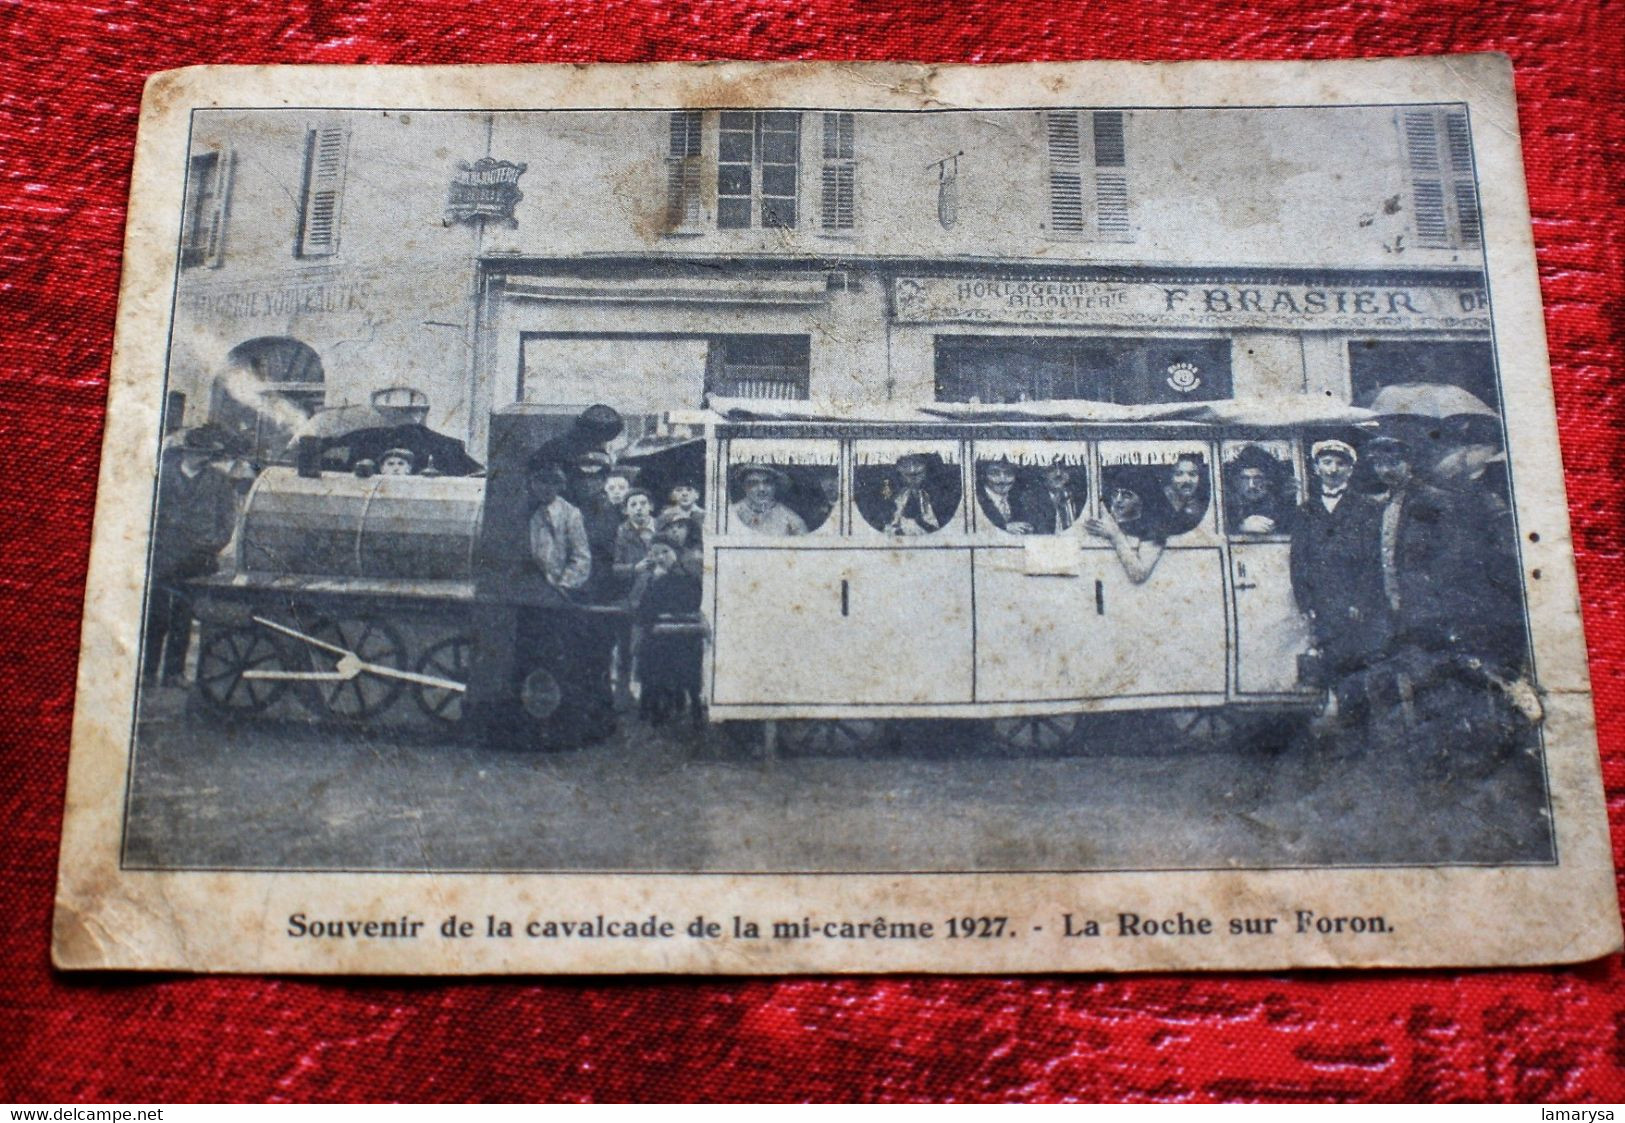 1927- La Roche-sur-Foron [74] Haute Savoie-☛Carte Postale Photo Montage Souvenir Cavalcade Mi-Carême-☛CP En Mauvais état - La Roche-sur-Foron